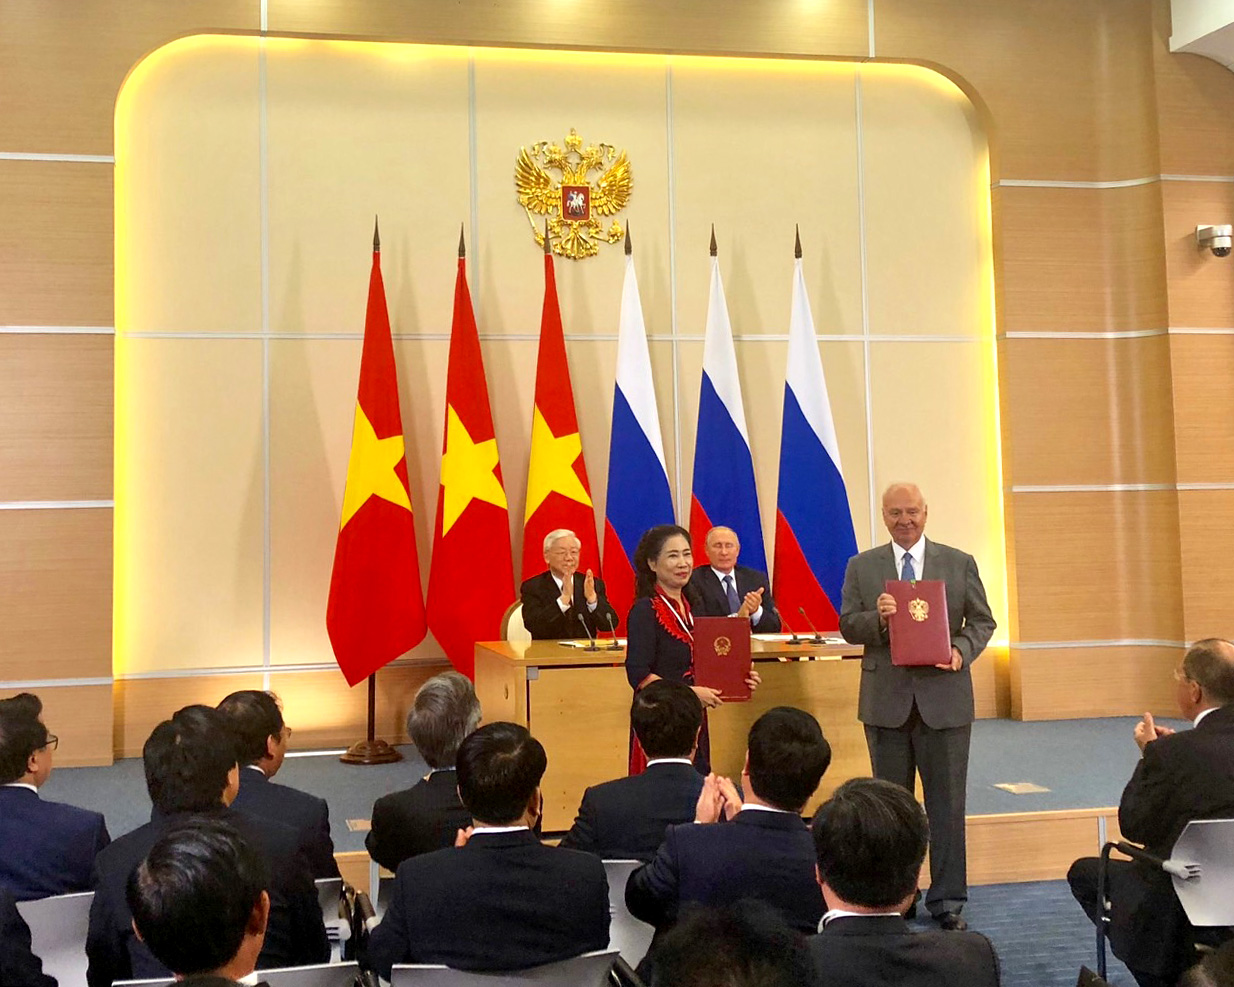 Việt Nam và Nga ký Chương trình hợp tác văn hóa